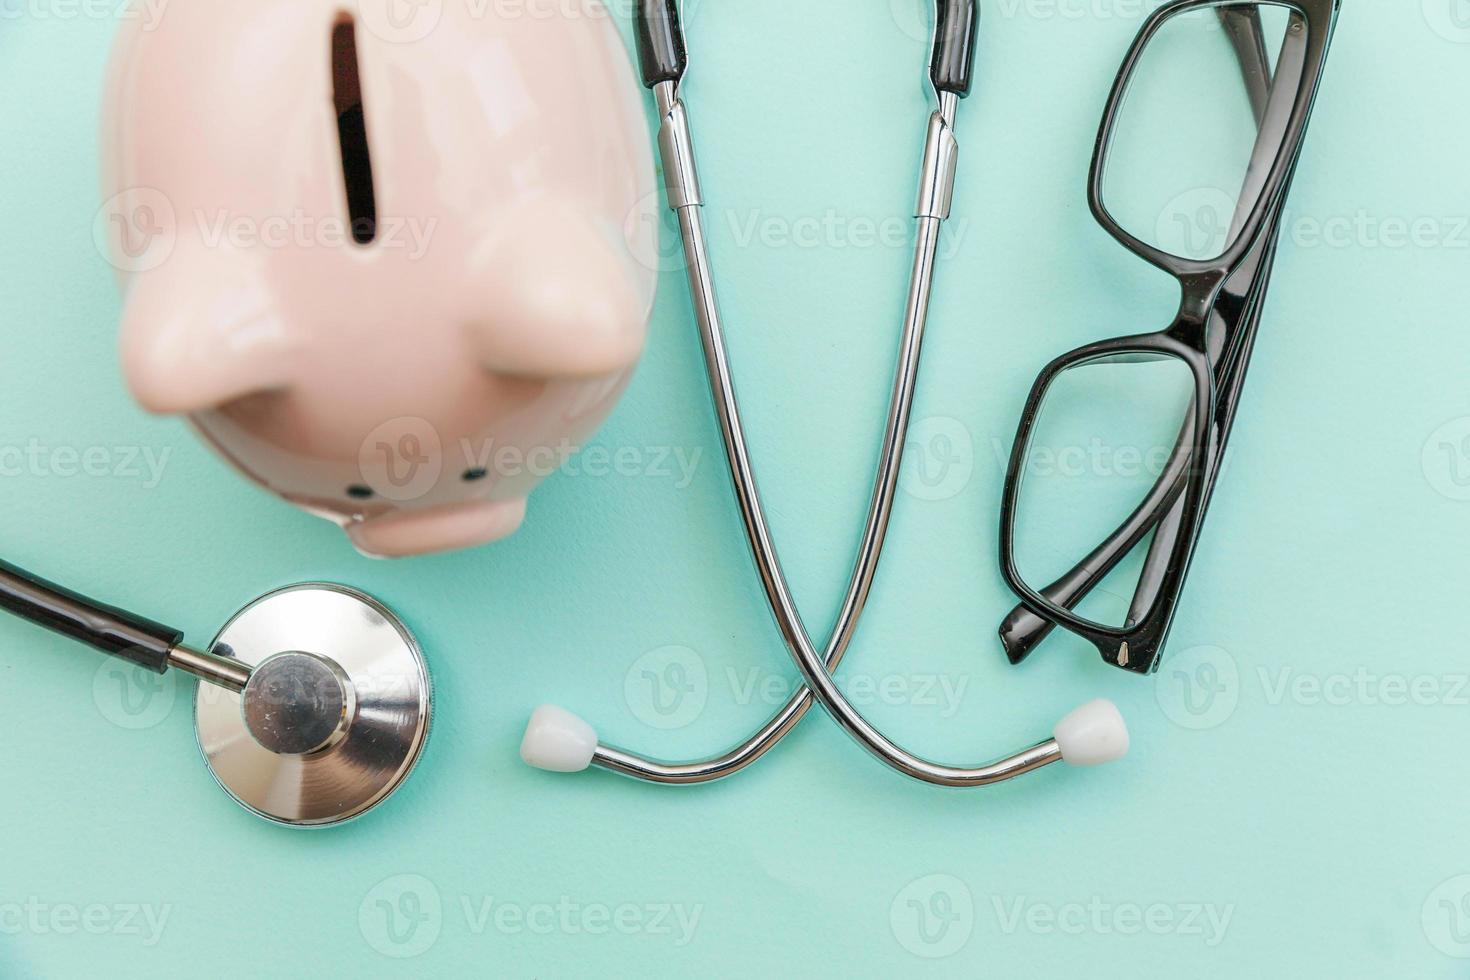 medizin arzt ausrüstung stethoskop oder phonendoskop sparschwein brille isoliert auf trendigem pastellblauem hintergrund foto